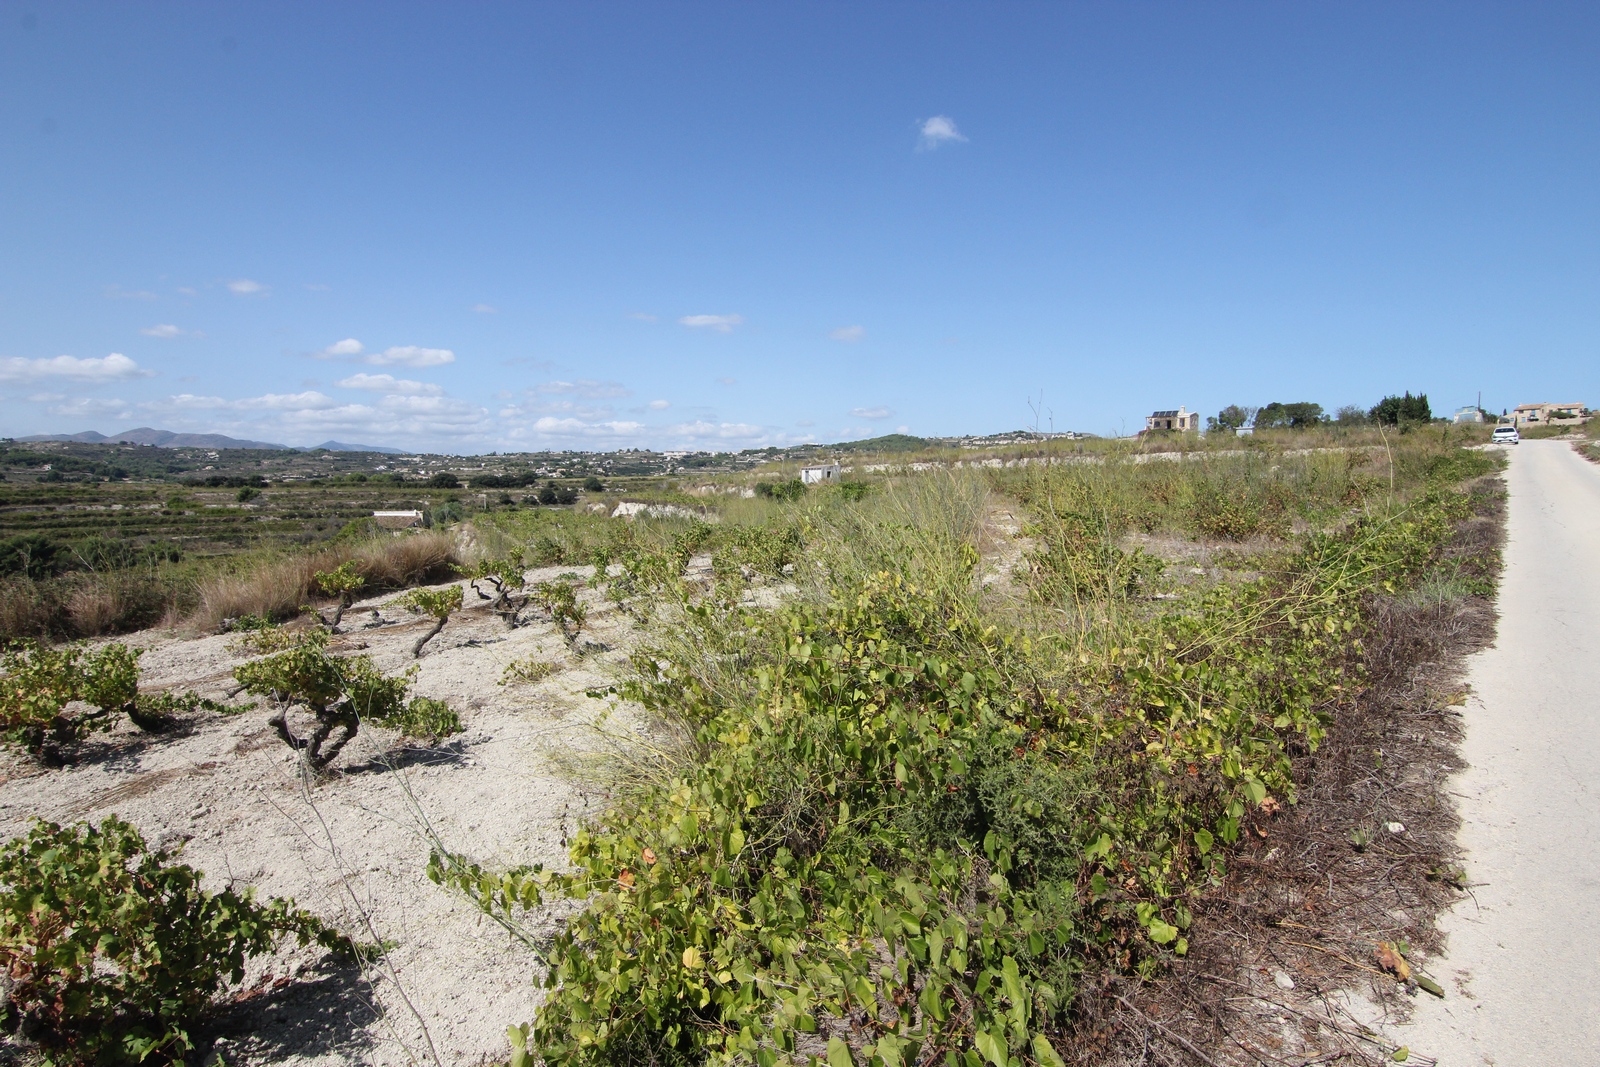 Terrain rustique à vendre avec vue panoramique.